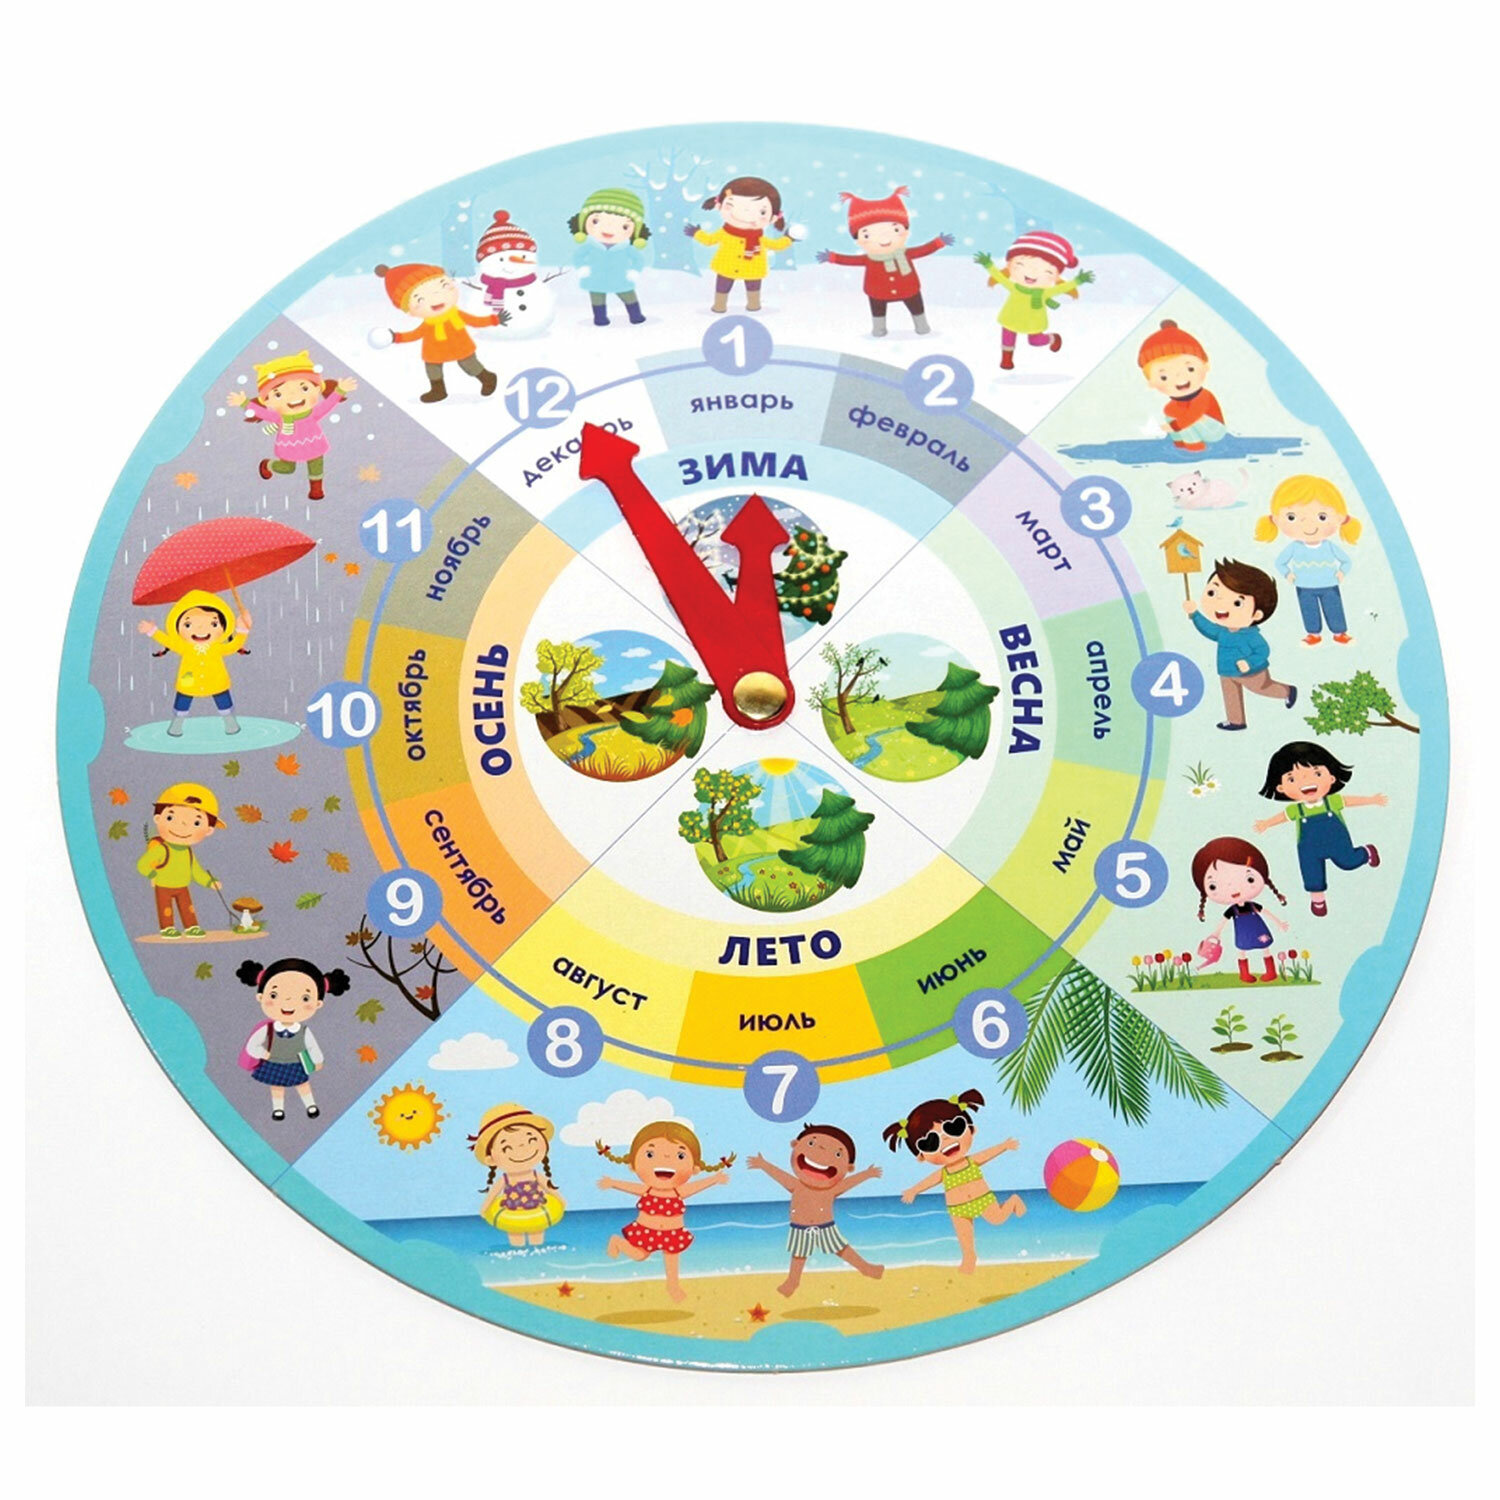 Игра с часами для детей. Часы времена года. Часы игровые обучающие. Часы времена года для детей. Часы распорядок дня для детей.